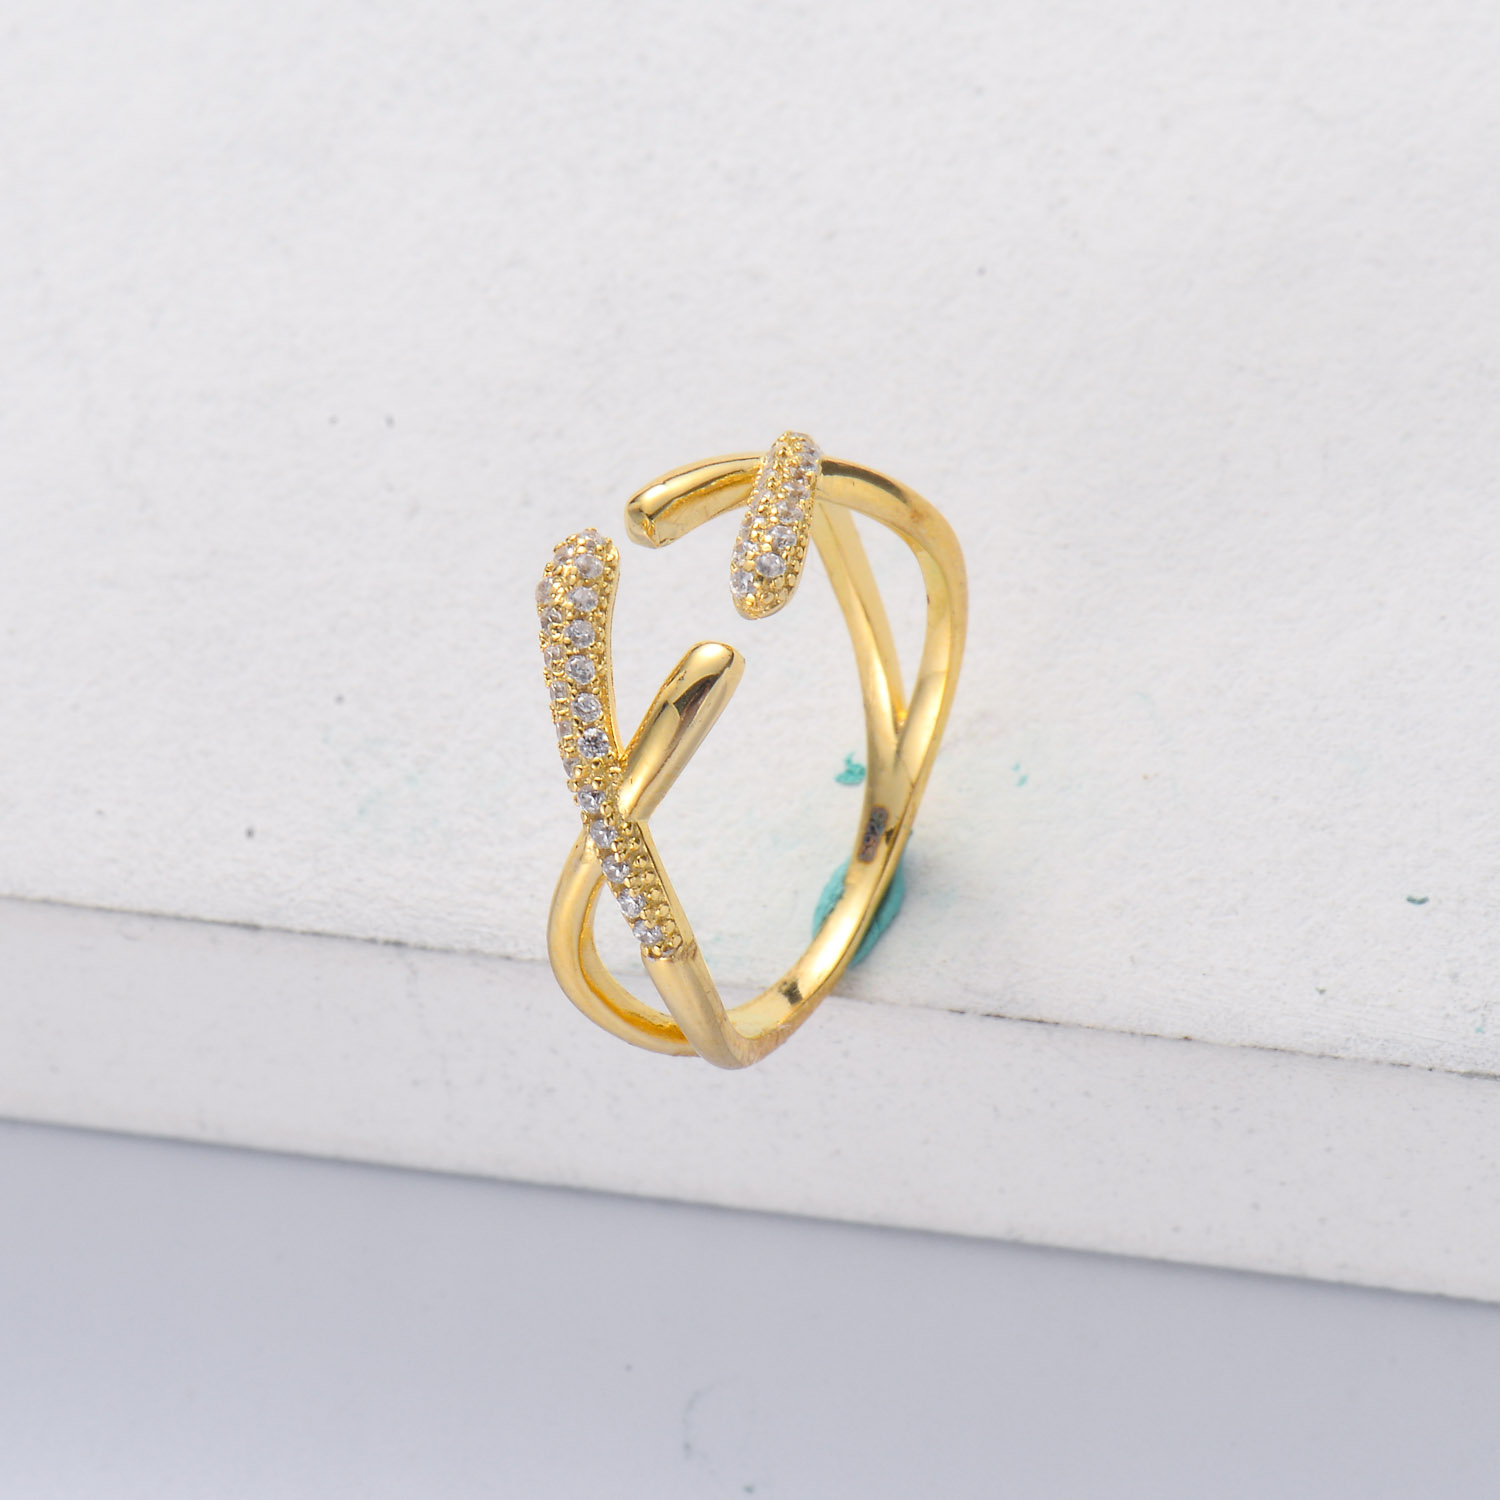 Anillos aesthetic de Plata 925 ajustable con Diamantes triturados dorado de 18k